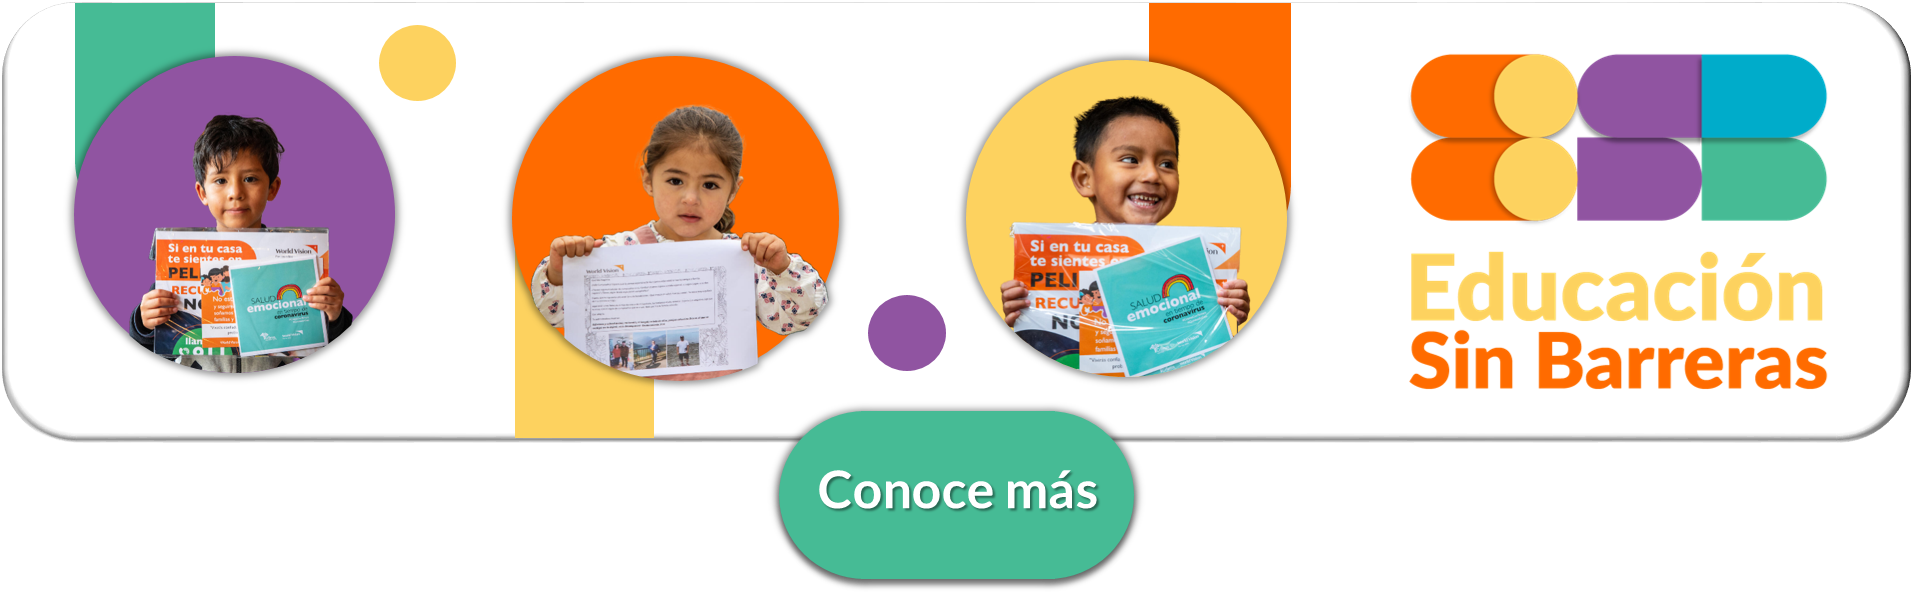 Juegos didácticos para niños de 2 a 5 años - Maternitis. Maternidad,  crianza y planes en familia